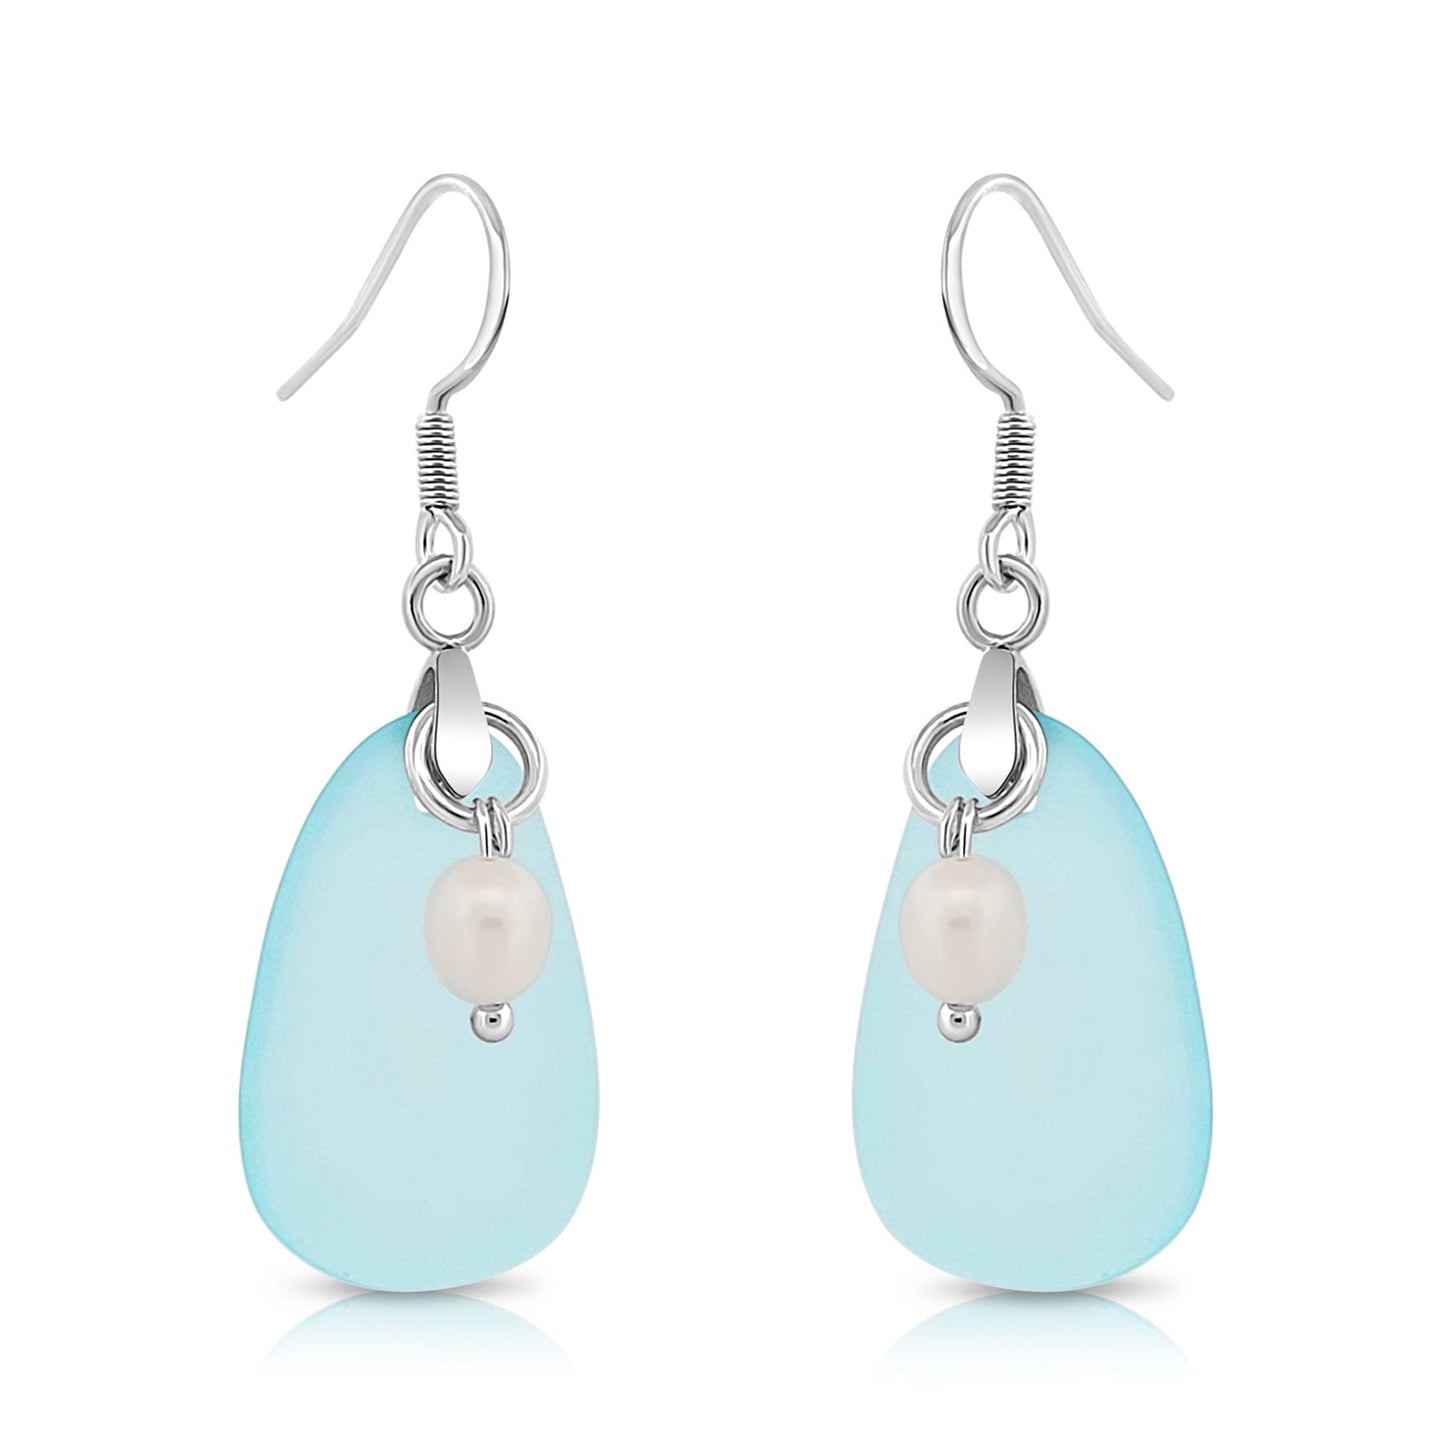 BESHEEK Sterling Silver Blue & Freshwater Pearl Seaglass Earrings | Handmade Hypoallergenic Boho Beach Gala Wedding Style Fashion Earrings